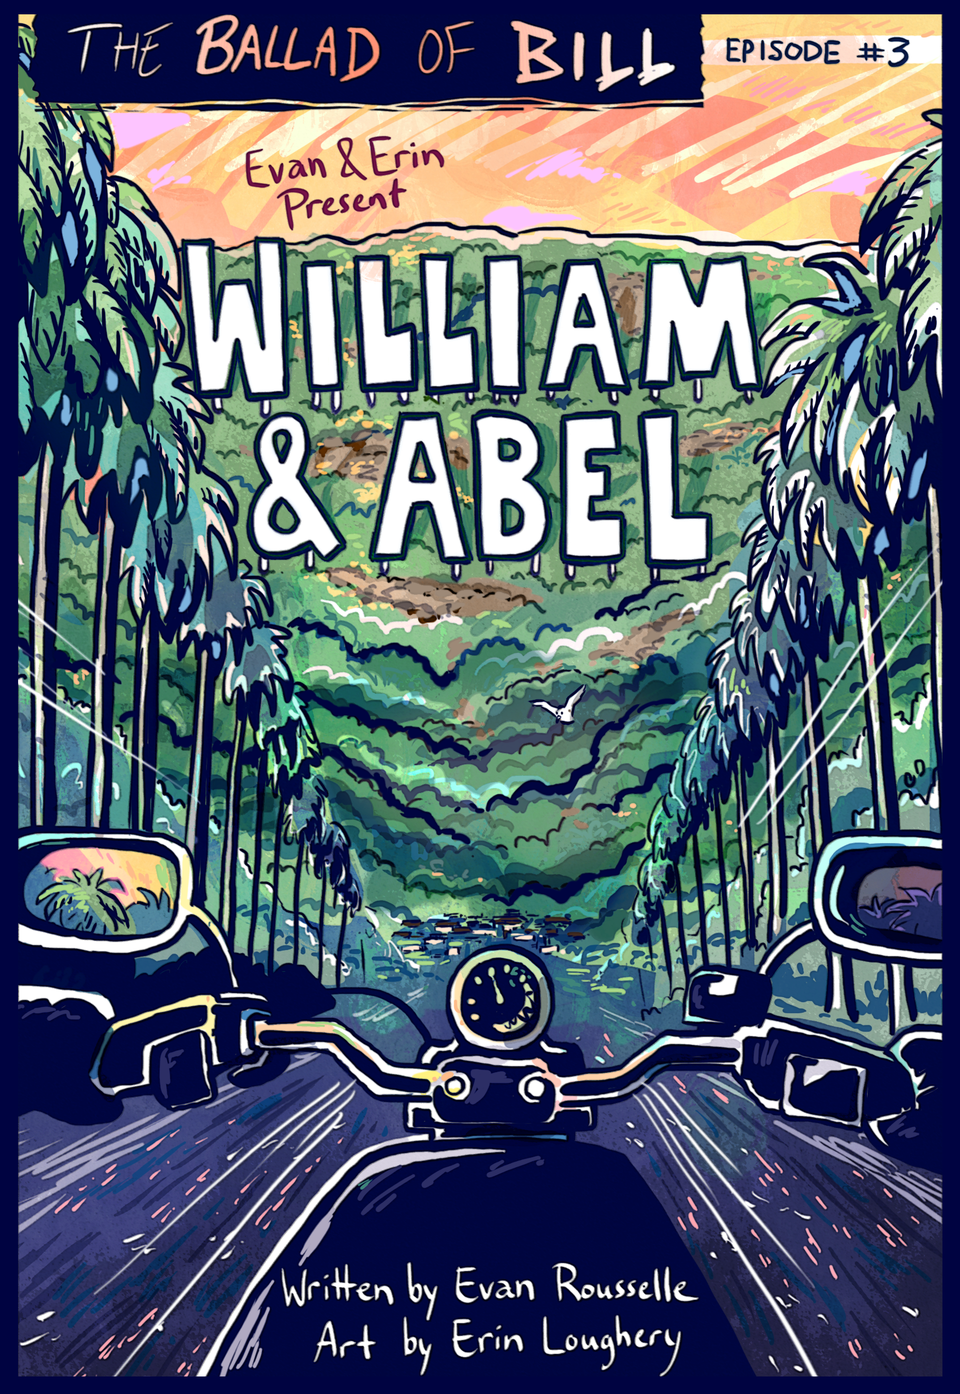 Episode 3: William & Abel